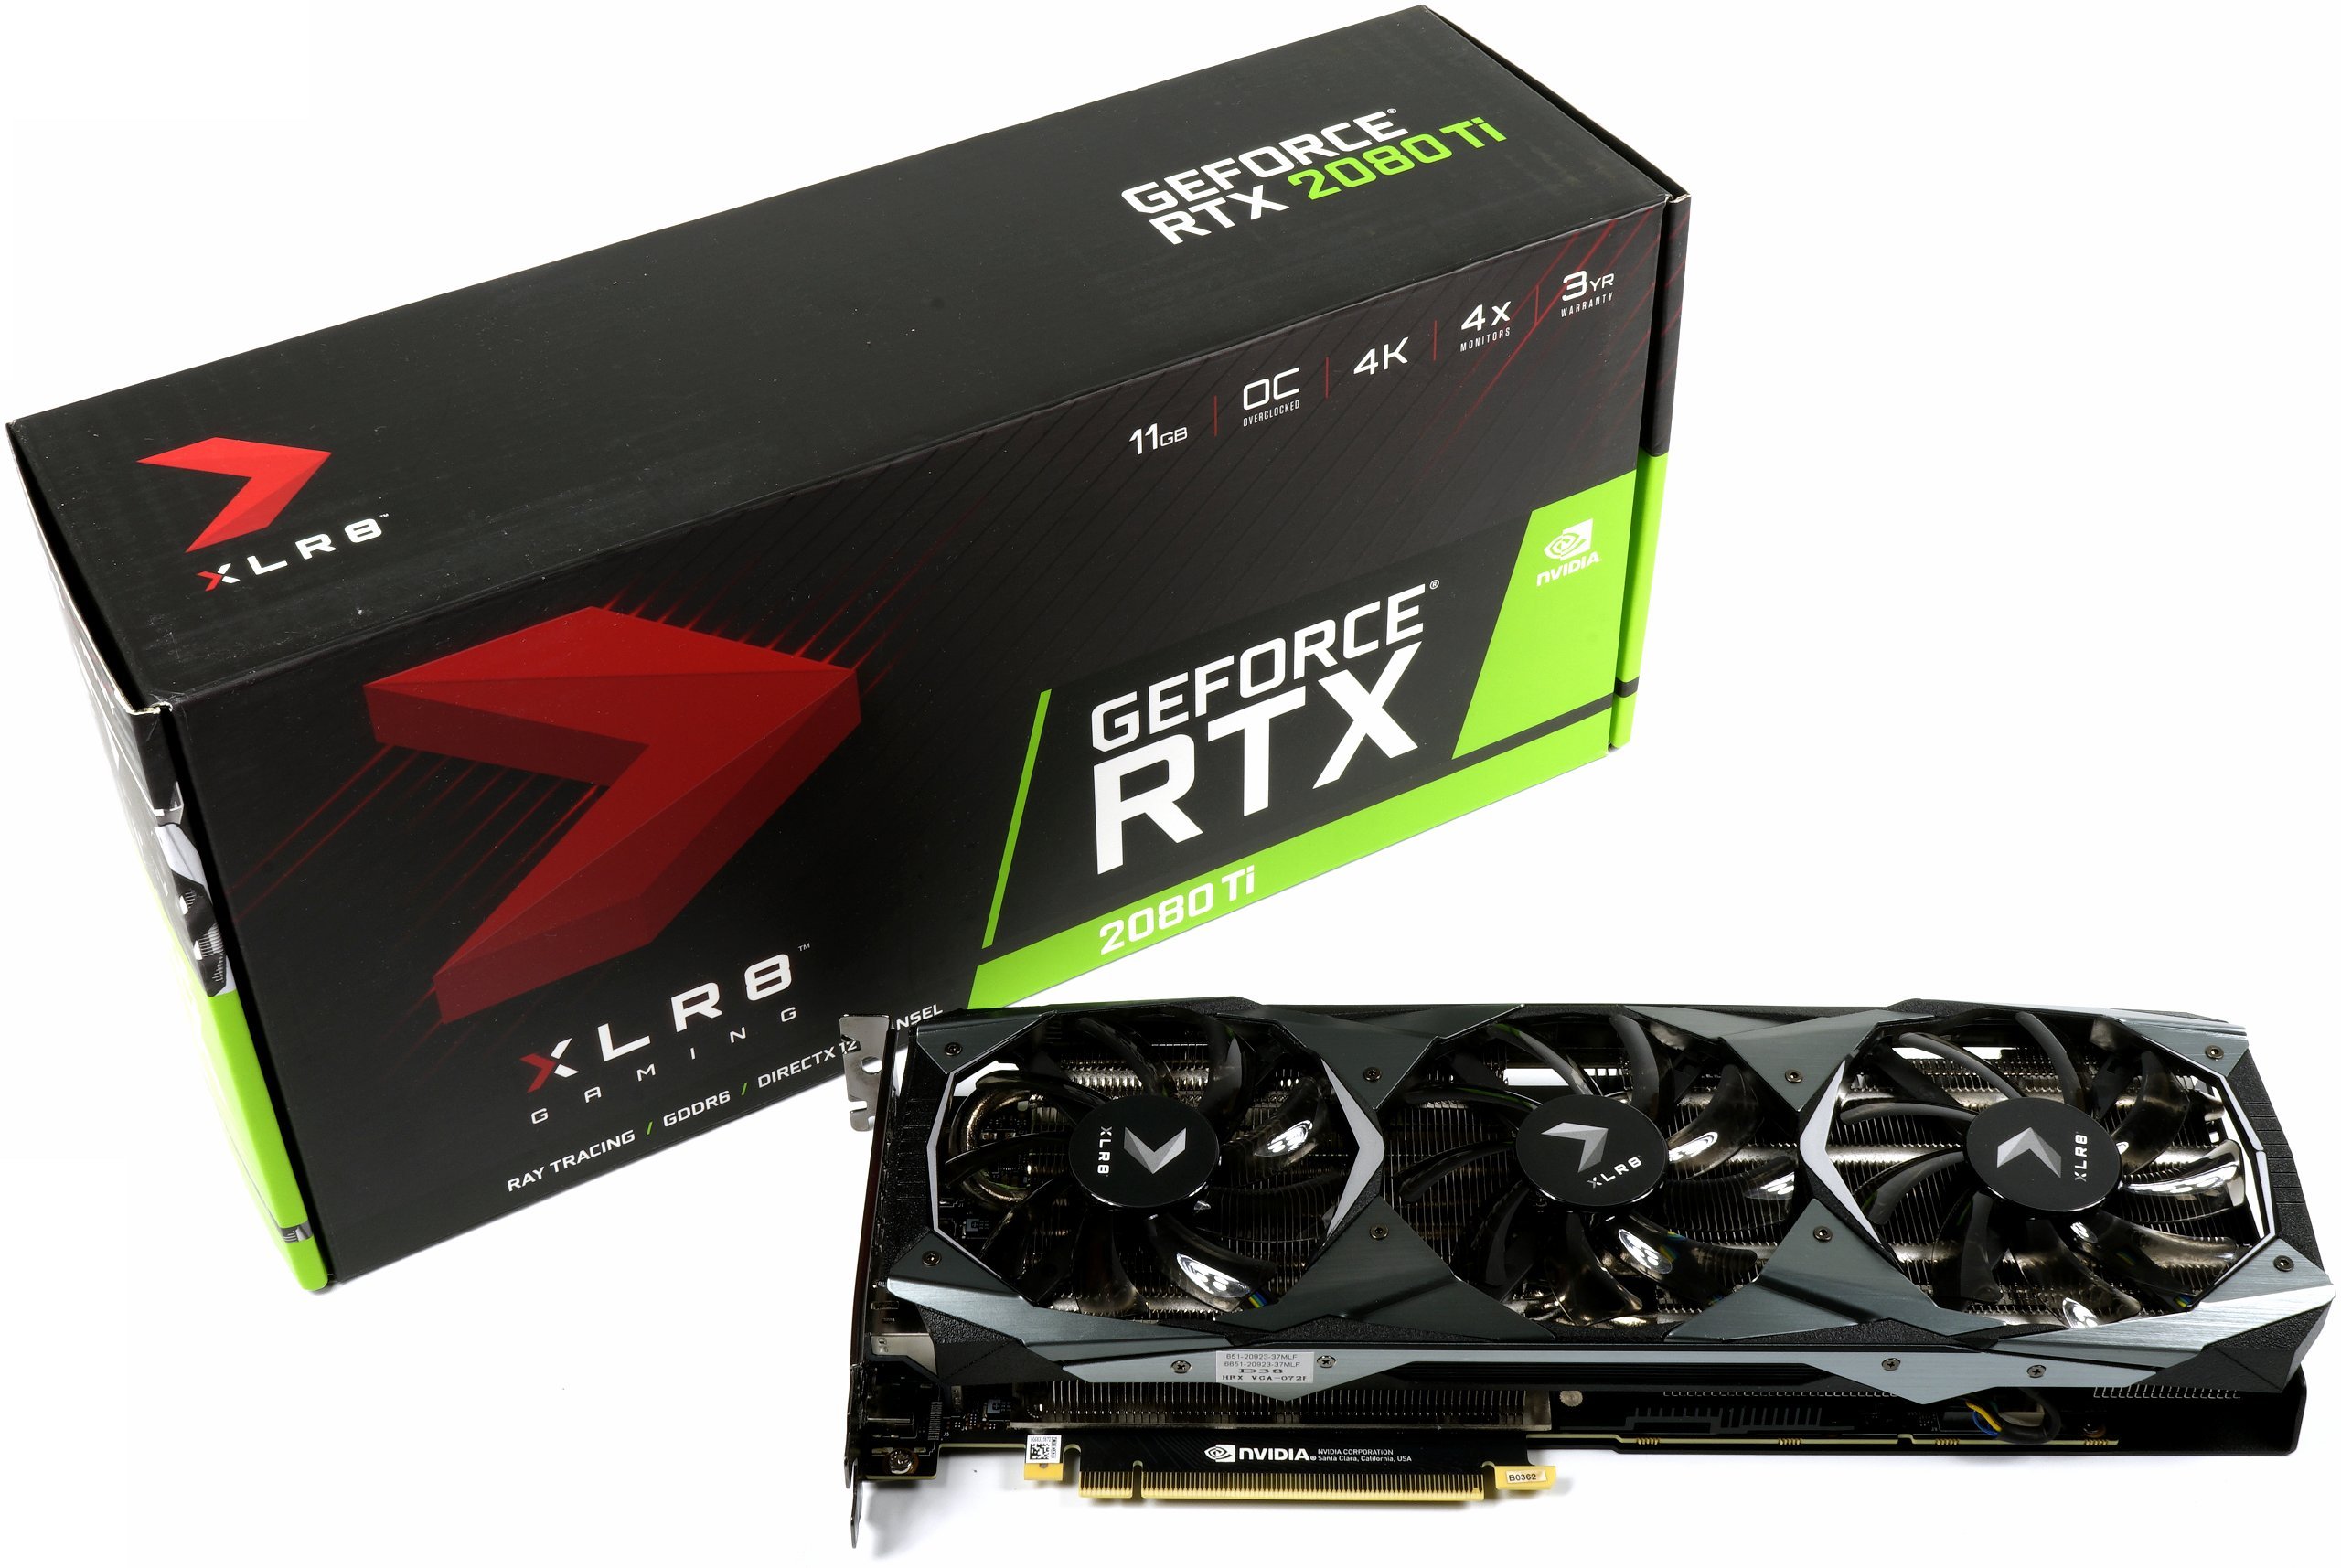 Image 60 : Test : GeForce RTX 2080 Ti XLR8, sérieuse et raisonnable